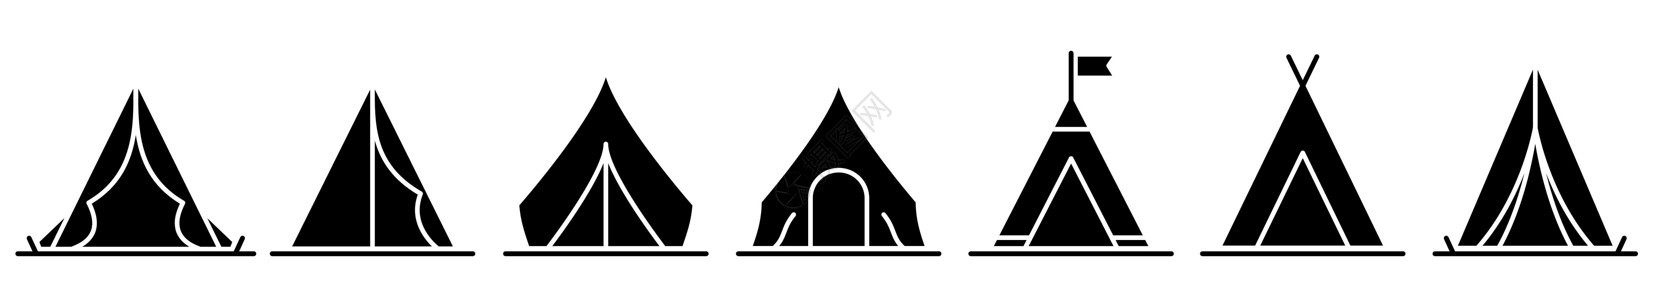 帐篷图标 一组黑色的帐篷图标 露营或旅行图标图片